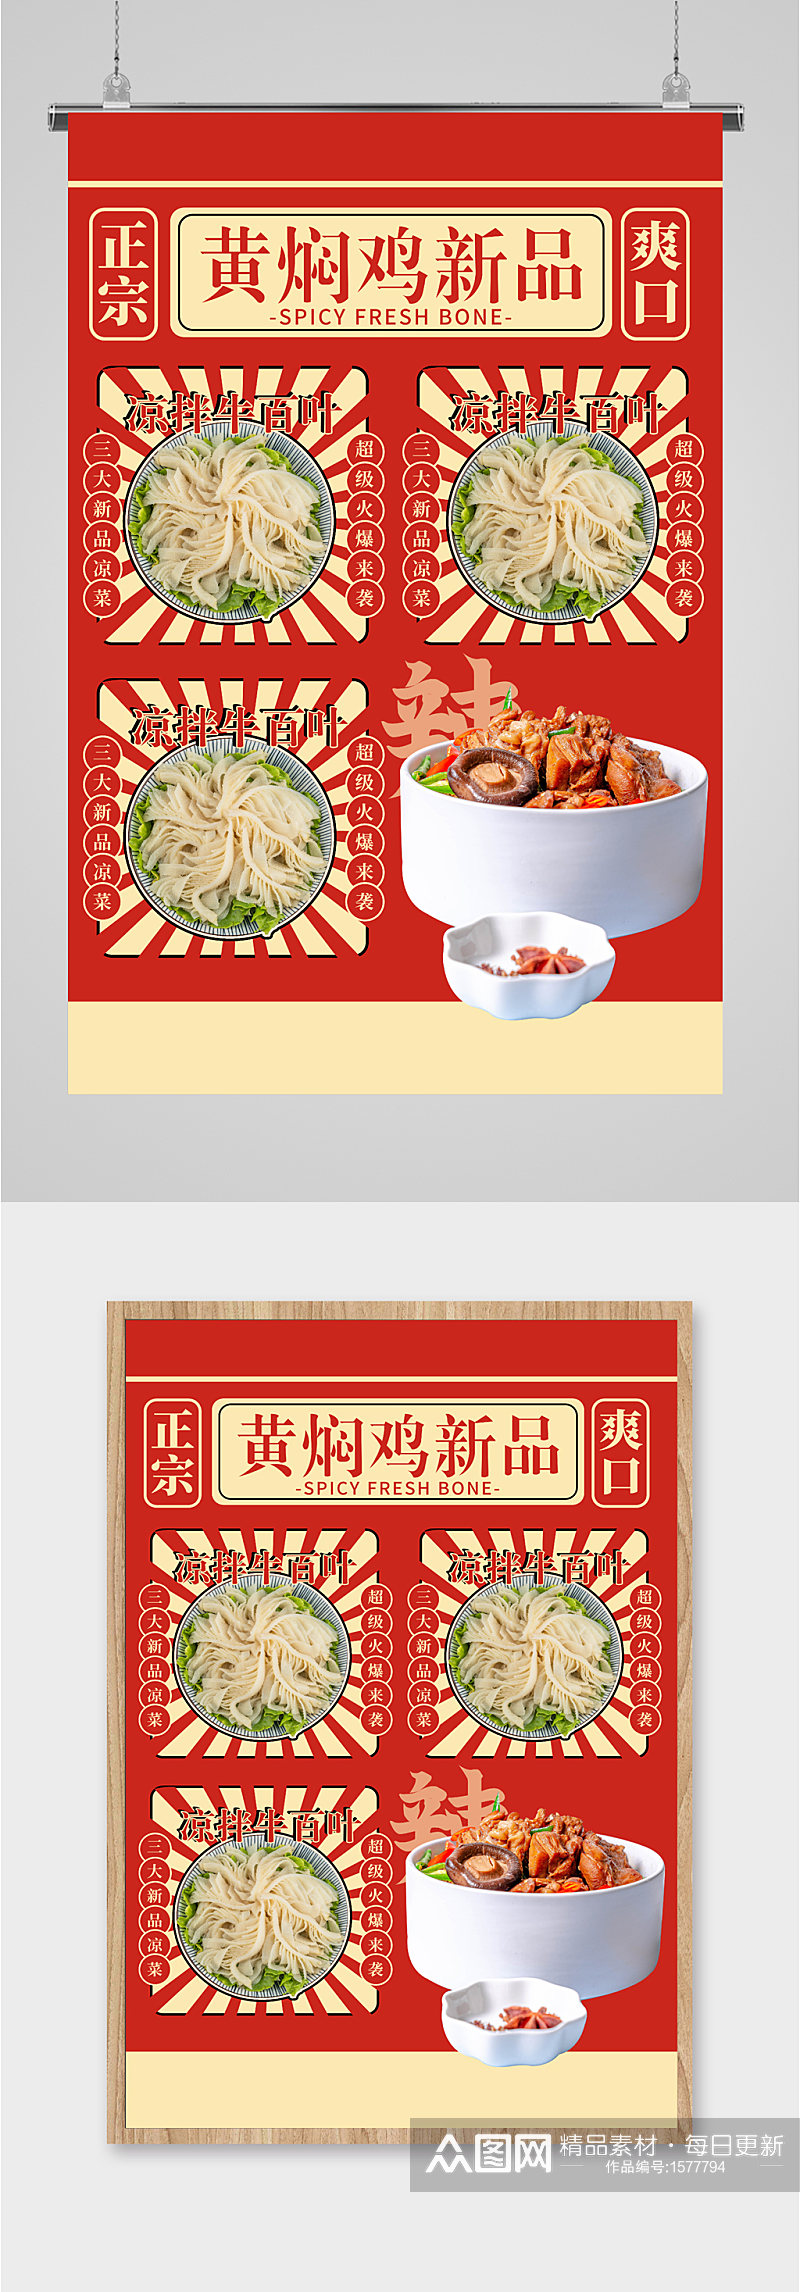 小吃黄焖鸡米饭新品海报素材